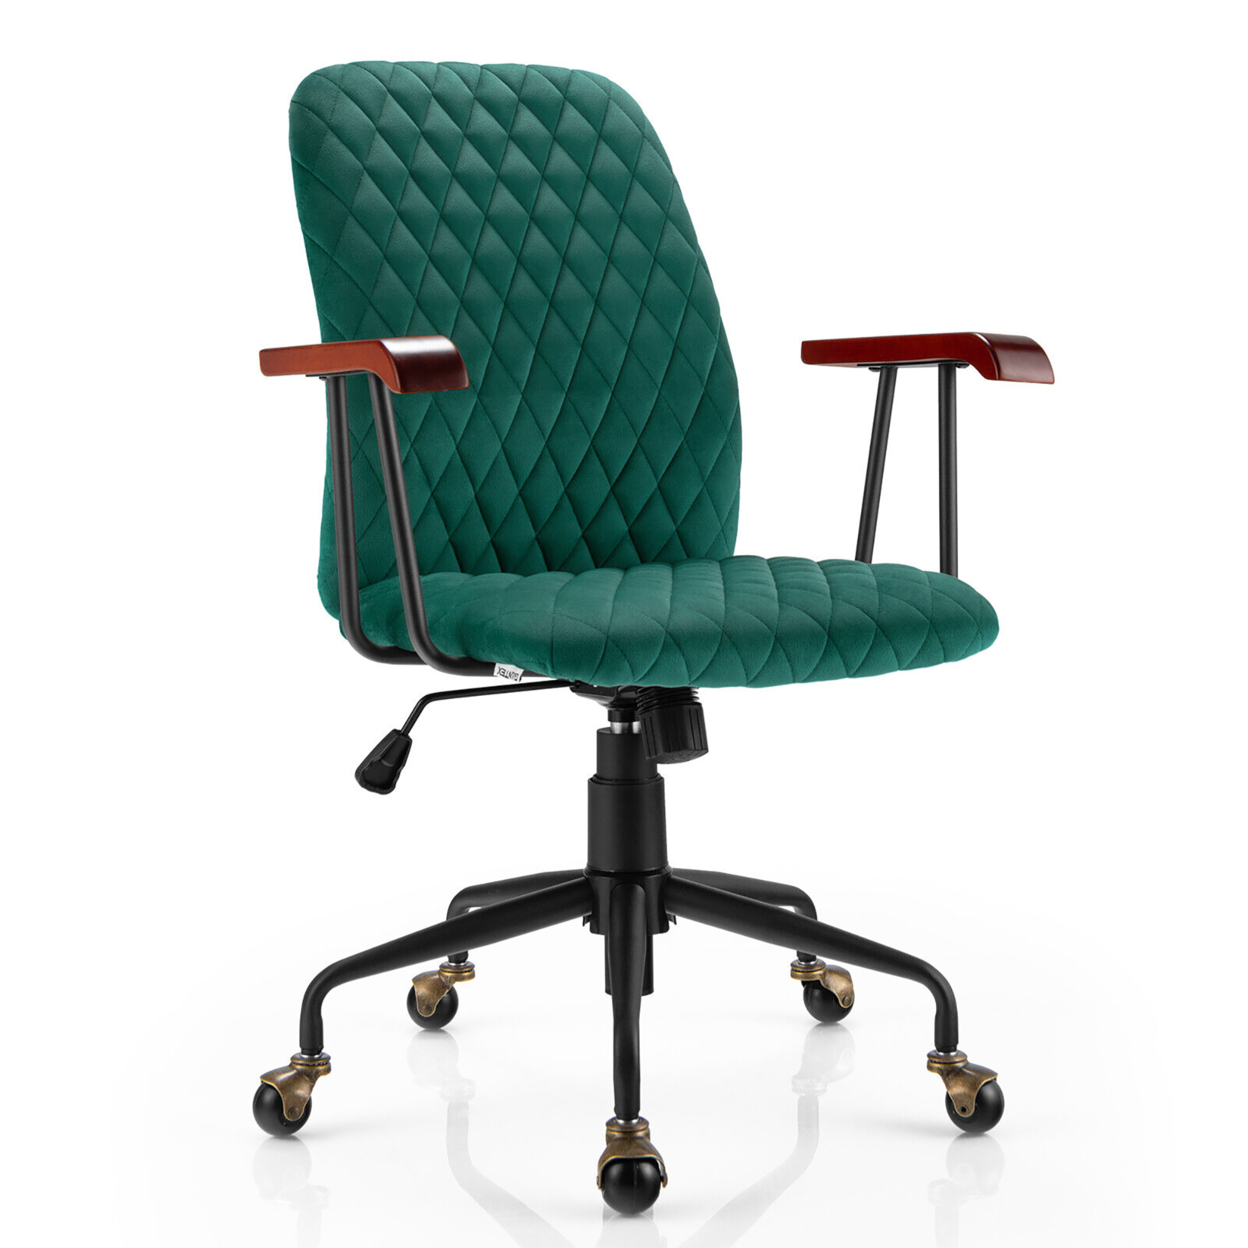 Velvet Home Office Chair Swivel Adjustable Task Chair W/ Wooden Armrest - Green